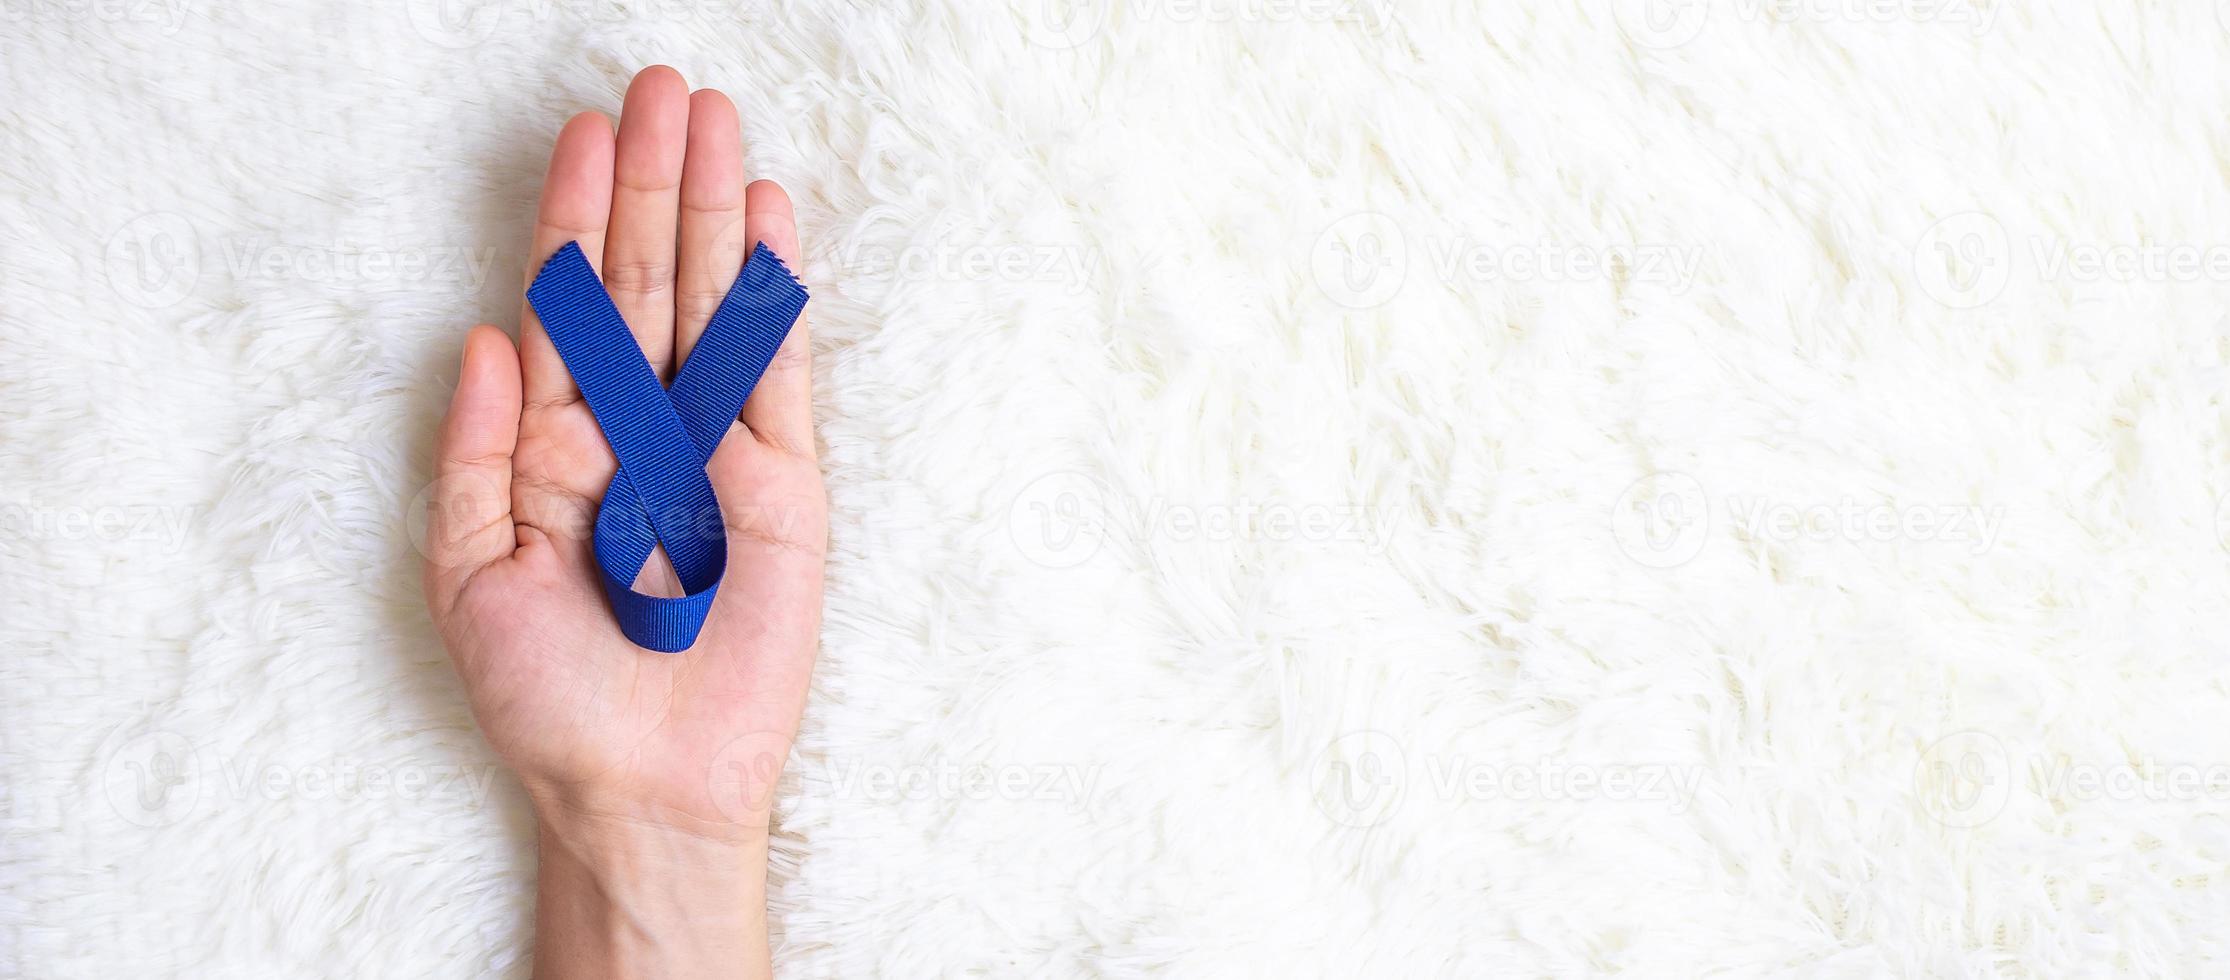 marzo mes de concientización sobre el cáncer colorrectal, hombre con cinta azul oscuro para apoyar a las personas que viven y están enfermas. concepto de salud, esperanza y día mundial contra el cáncer foto